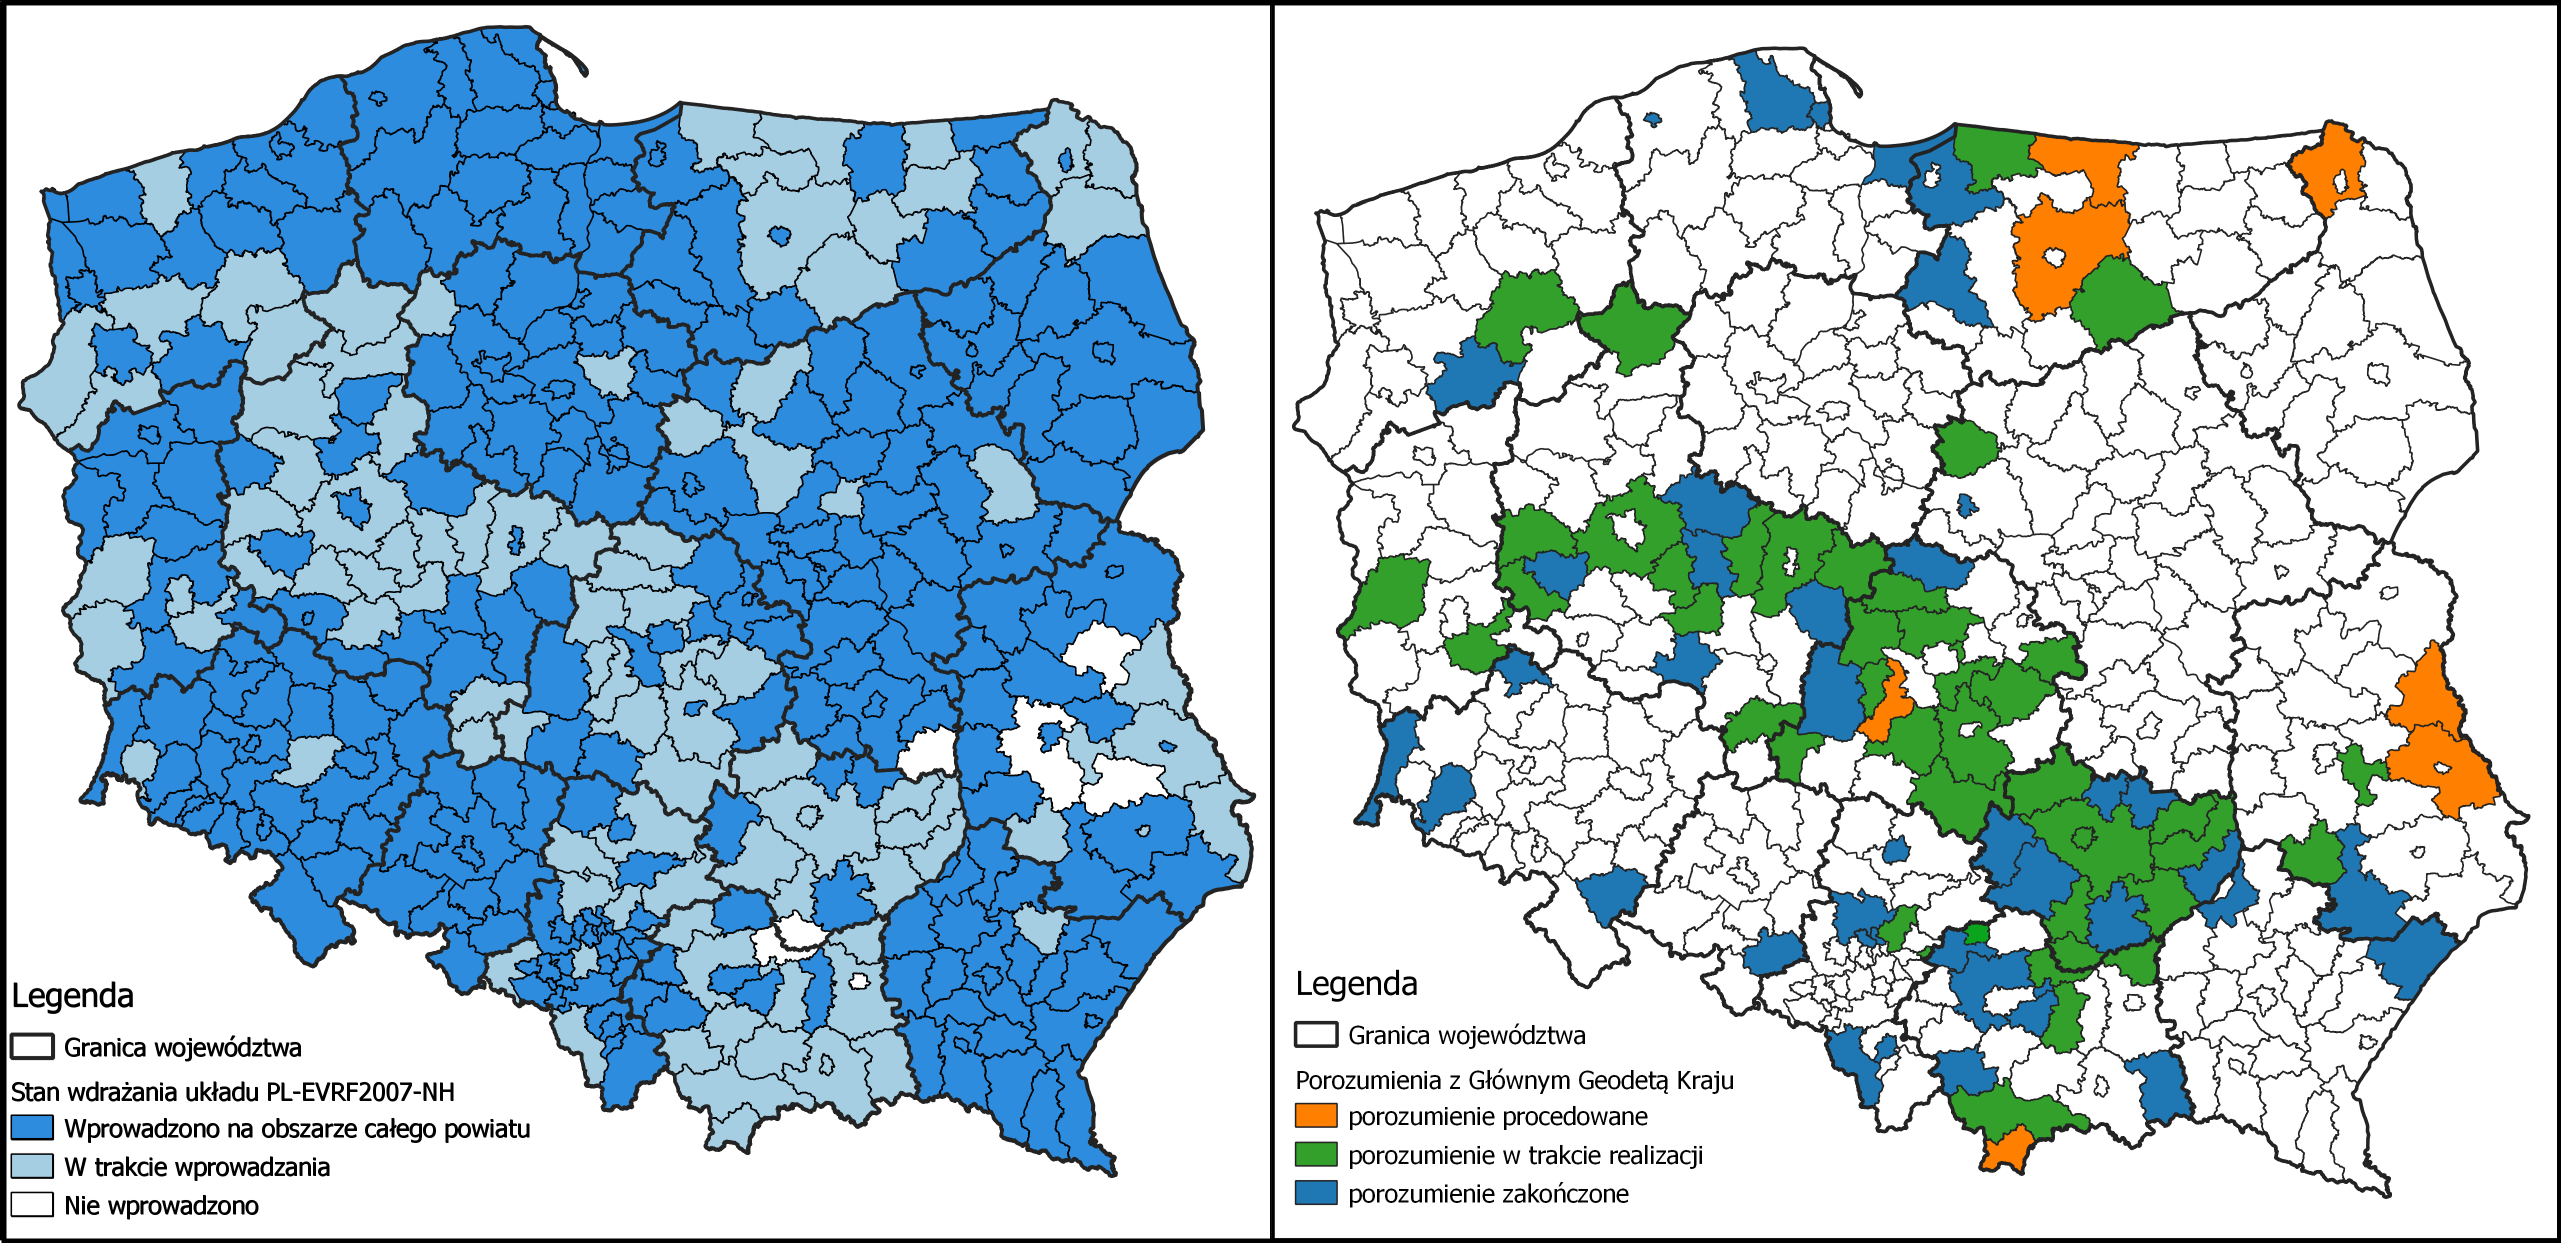 Ilustracja przedstawia zetawione obok siebie 2 mapy Polski z oznaczonym kolorystycznie: stanem wdrożenia układu PL-EVRF2007-NH w powiatach po lewej stronie i powiatami, z którymi zawarte zostało porozumienie po prawej stronie.